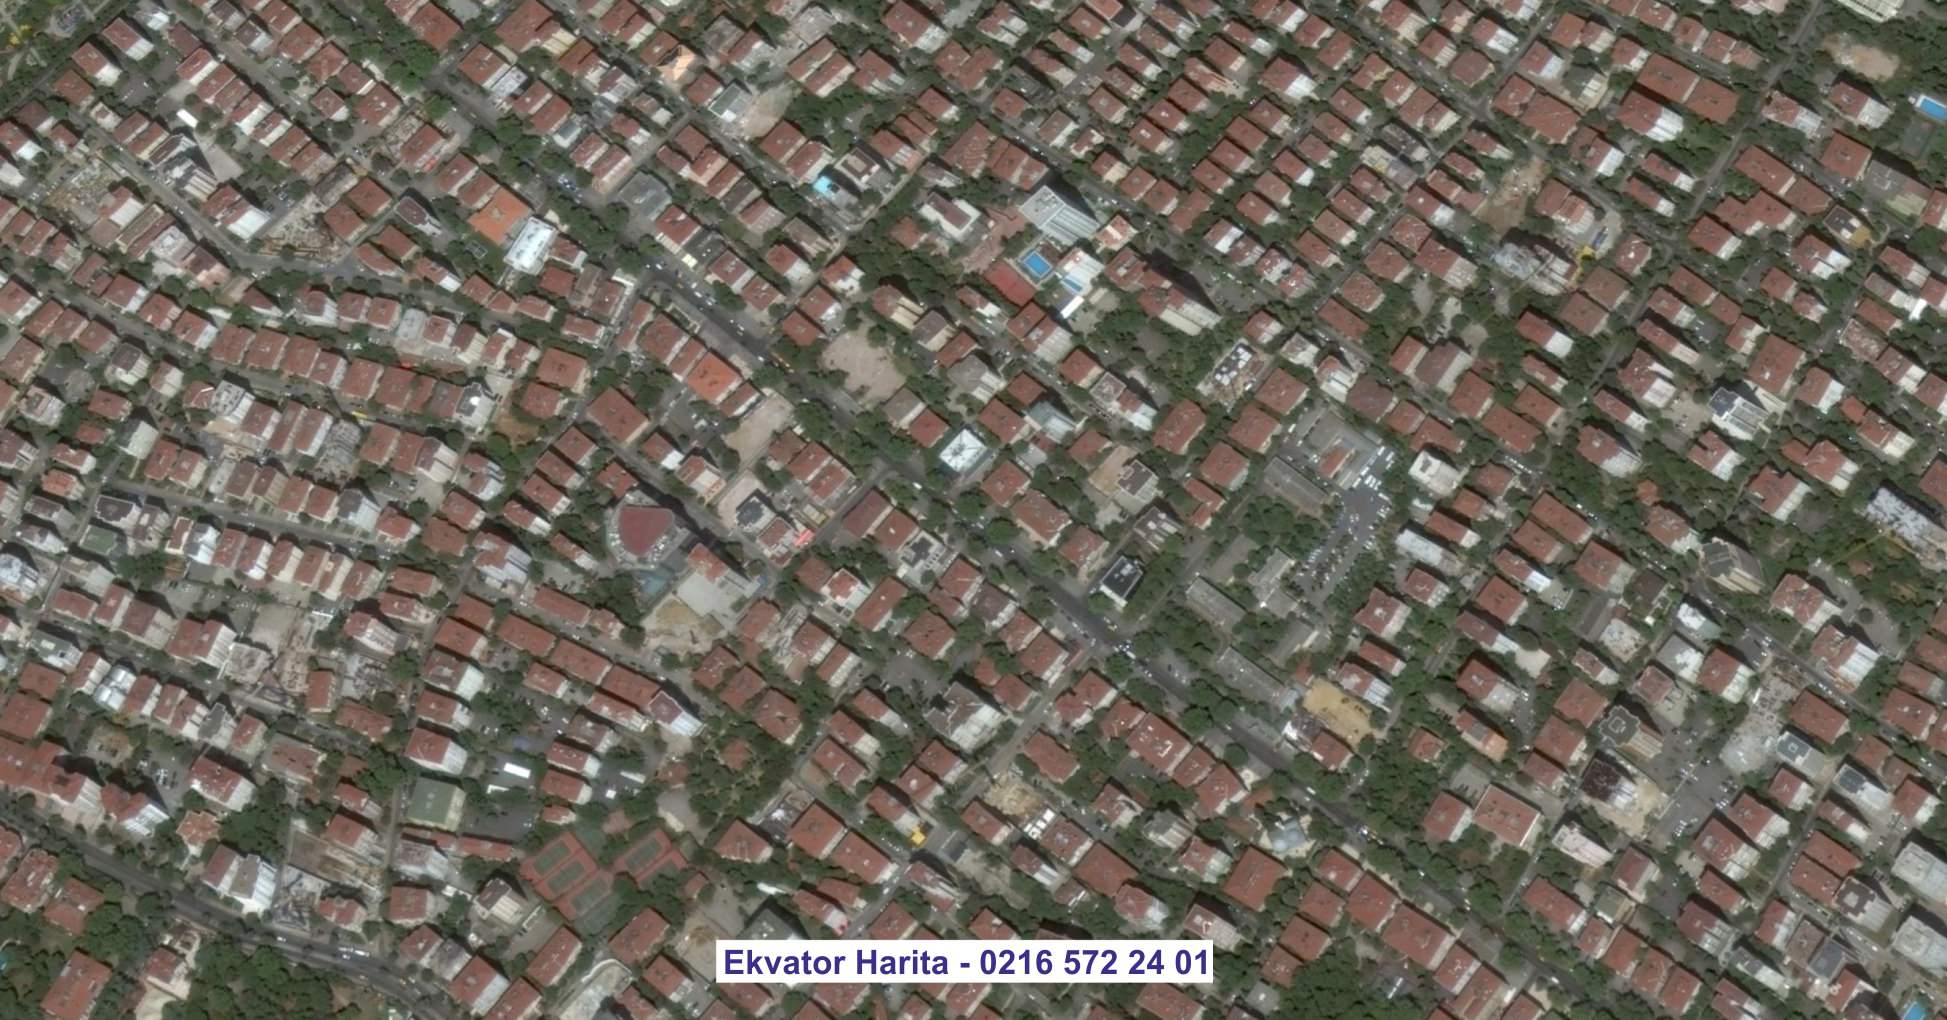 Tüdmür Uydu Görüntüsü Örnek Fotoğrafı